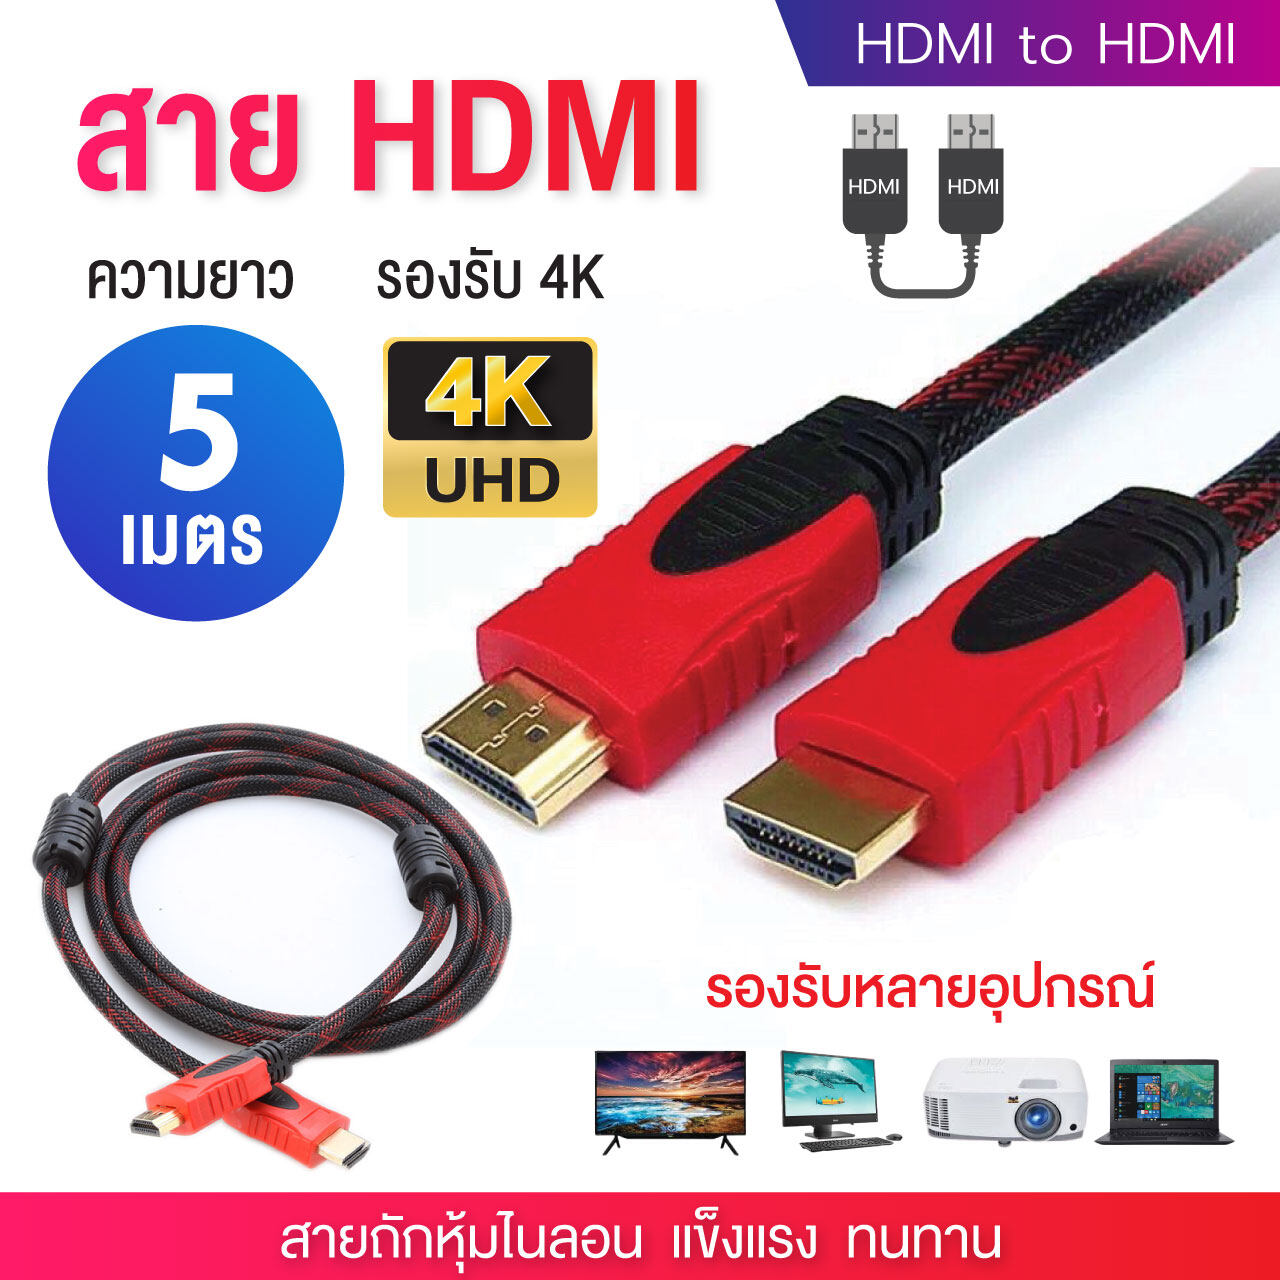 สายHDMI Cable 3m ยาว 5m 10m 15m ถักไนลอน รองรับทุกอุปกรณ์ ที่มีช่องเสียบ HDMI ความละเอียด 4K ส่งสัญญาณ ภาพ เสียง วิดิโอ PC Notebook Laptop